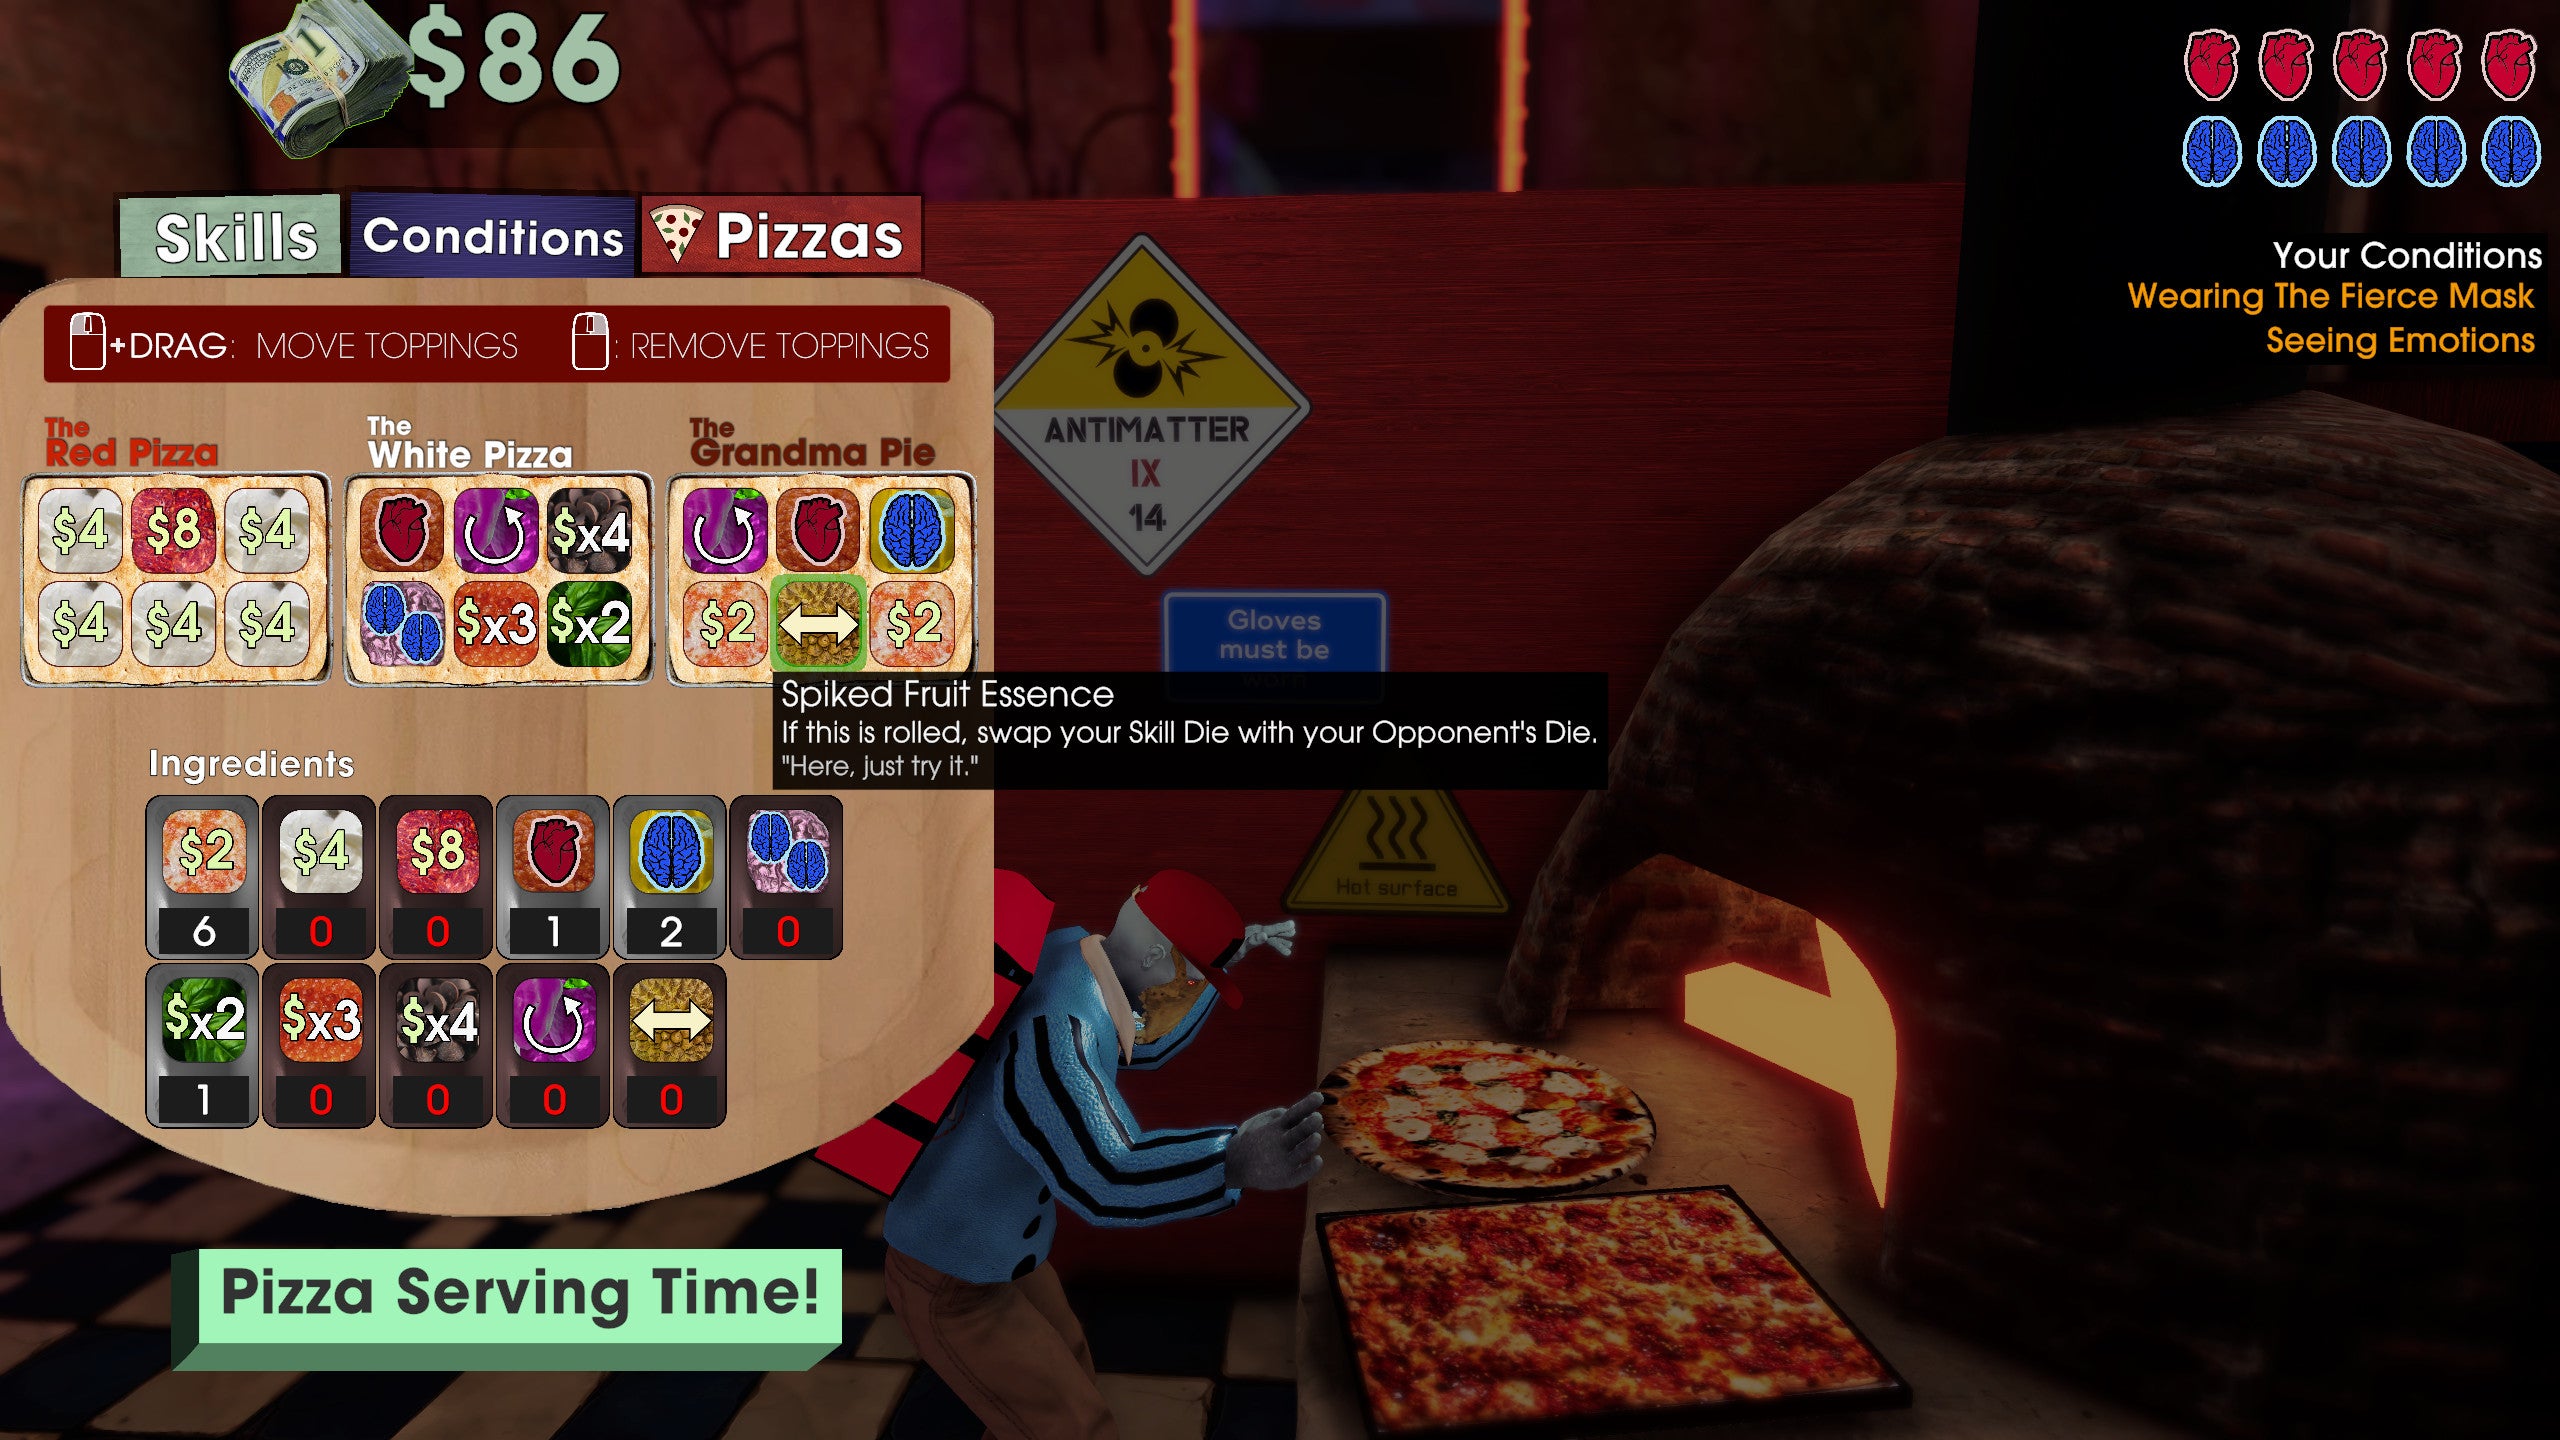 Baking pizza in a Betrayal At Club Low screenshot.